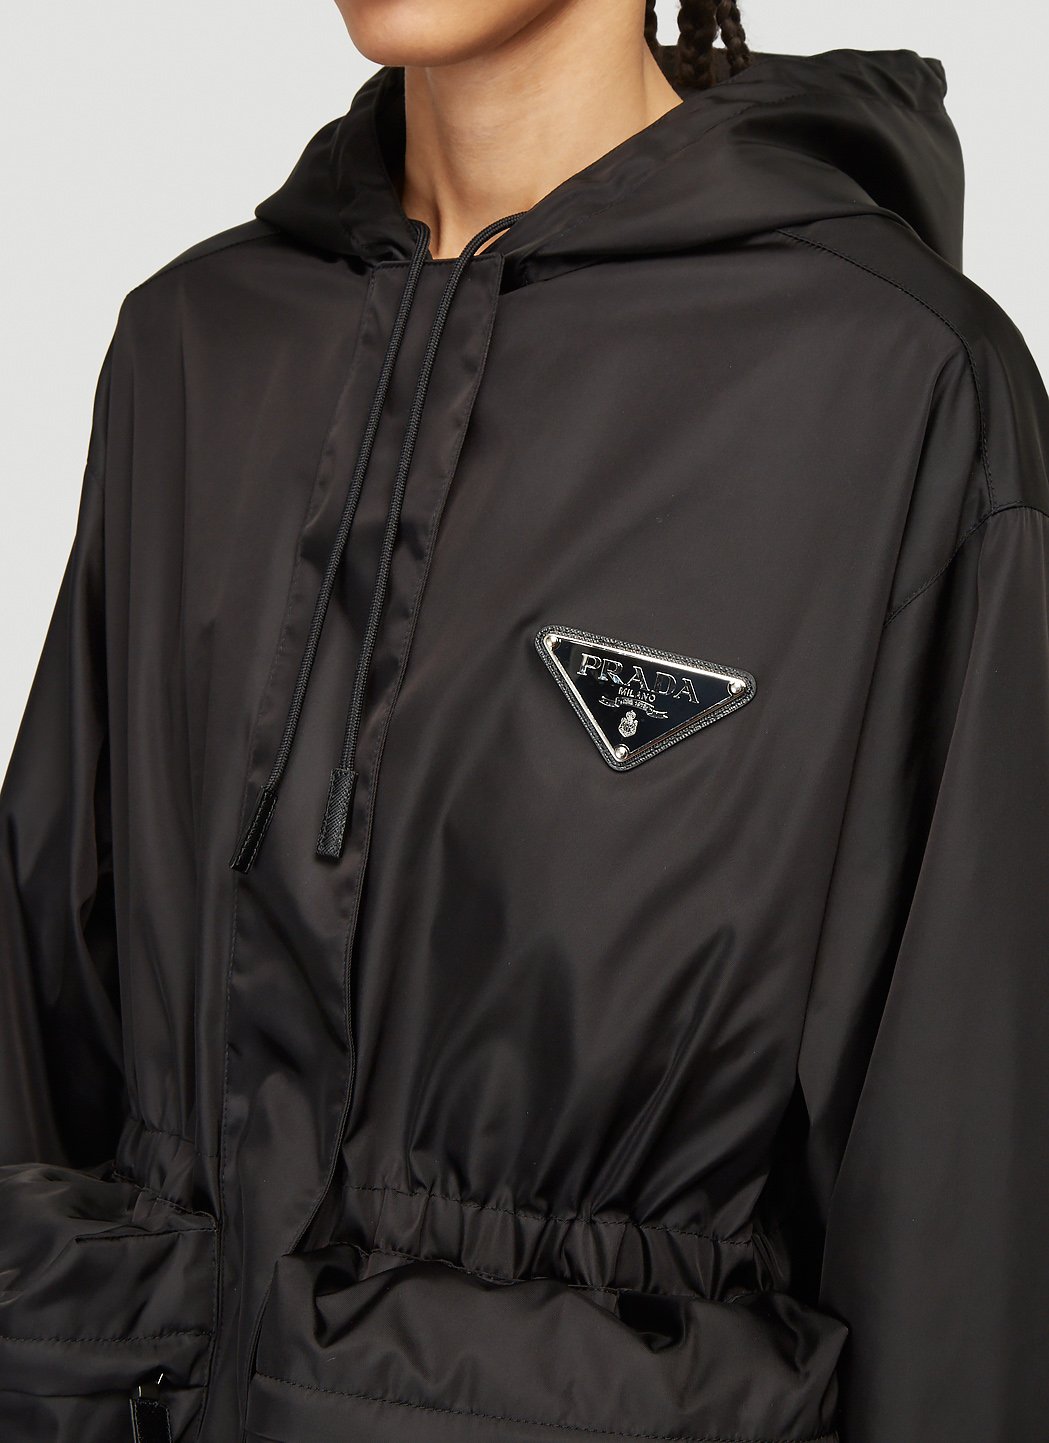 Prada Nylon Jacket in Black | LN-CC